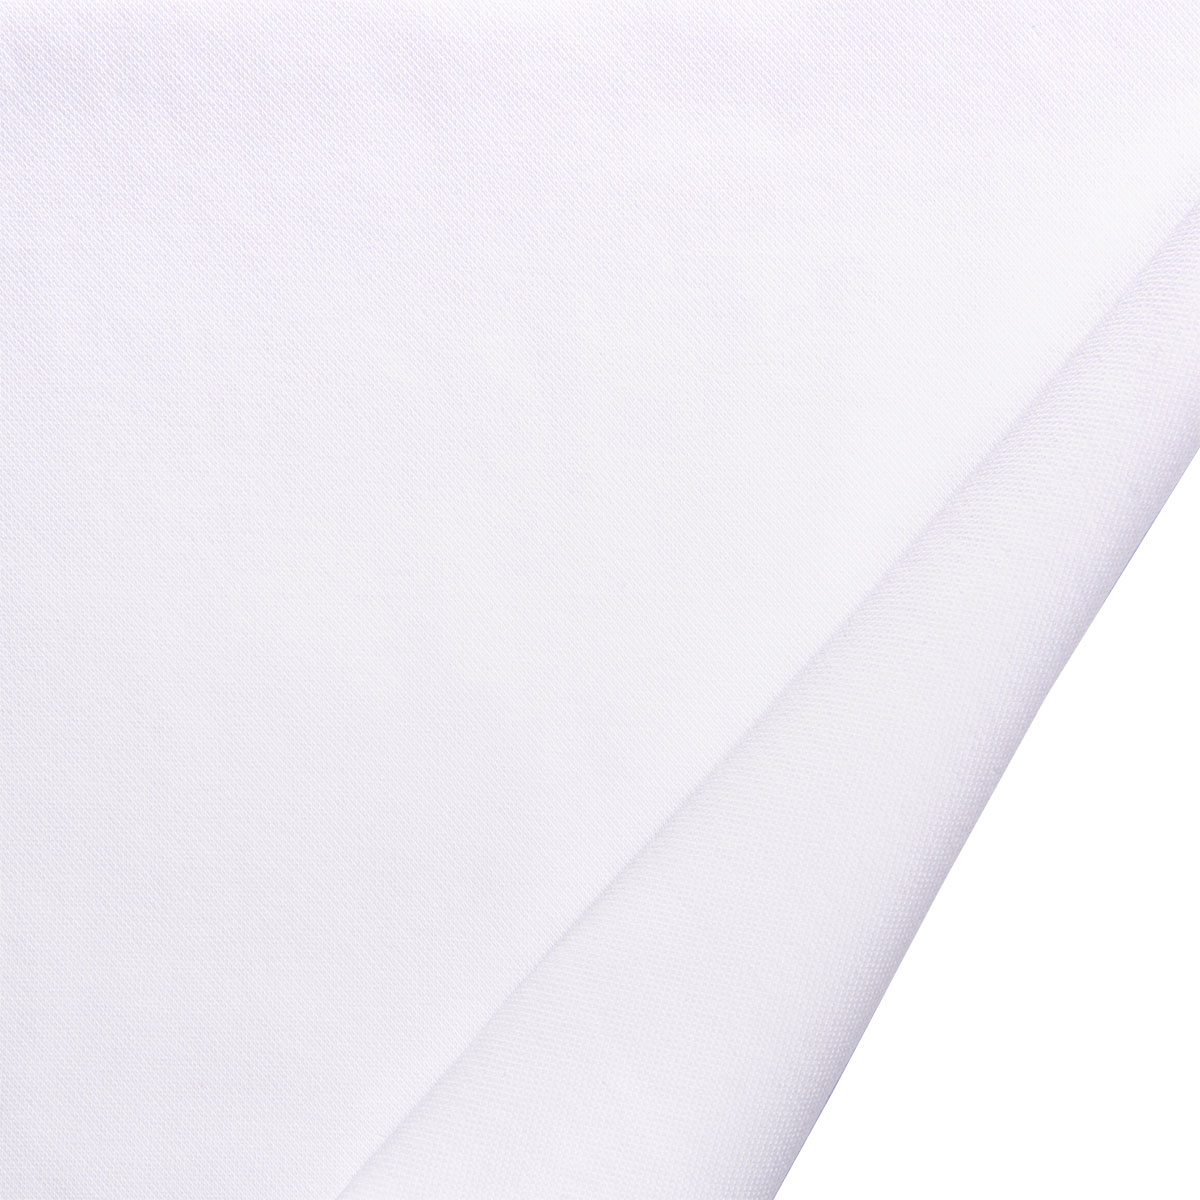 Dekostoff Polo Uni weiß in 1,6m Breite (METERWARE) Baumwollstoff Stoff aus 100% Baumwolle